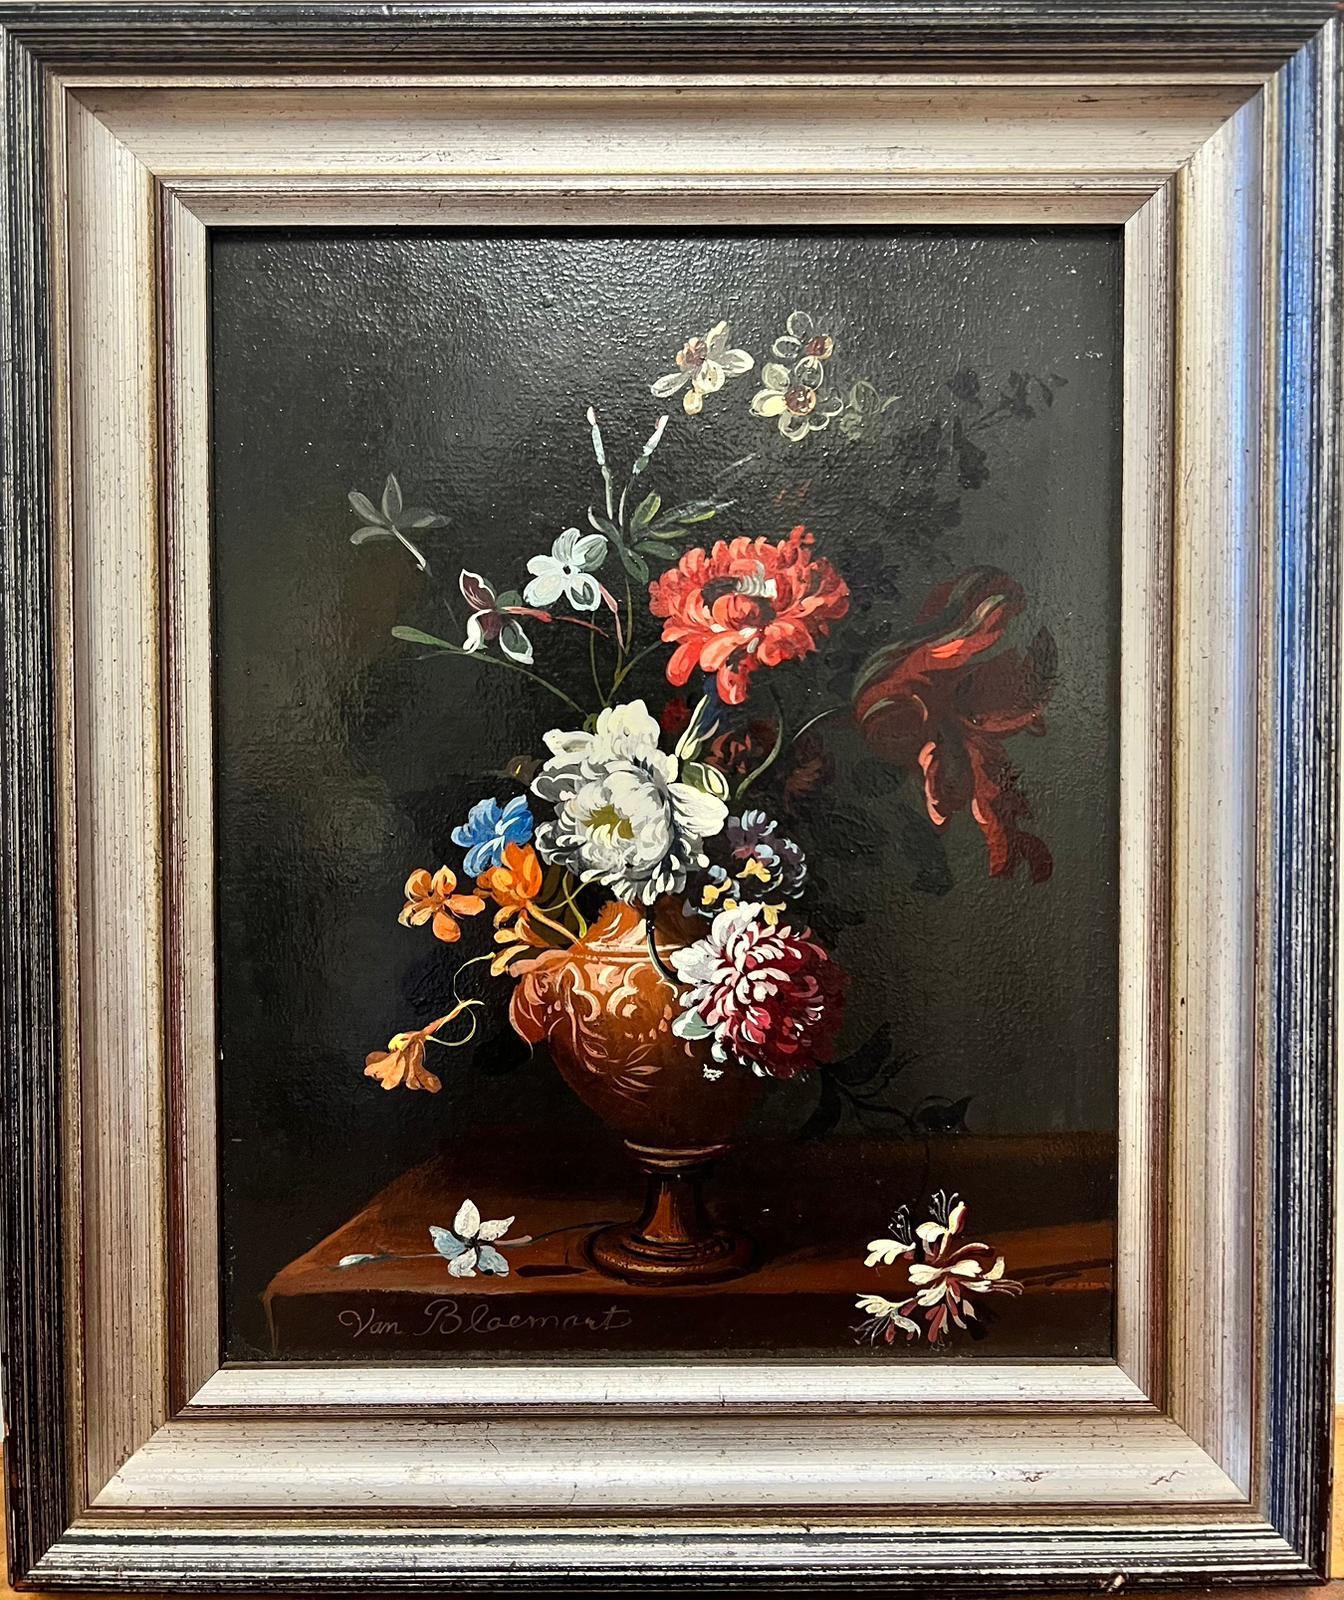 Schöne klassische niederländische Stillleben-Blumen im Stil eines alten Meisters in Vase, Ölgemälde  – Painting von Frederil Victor Van Bloemart